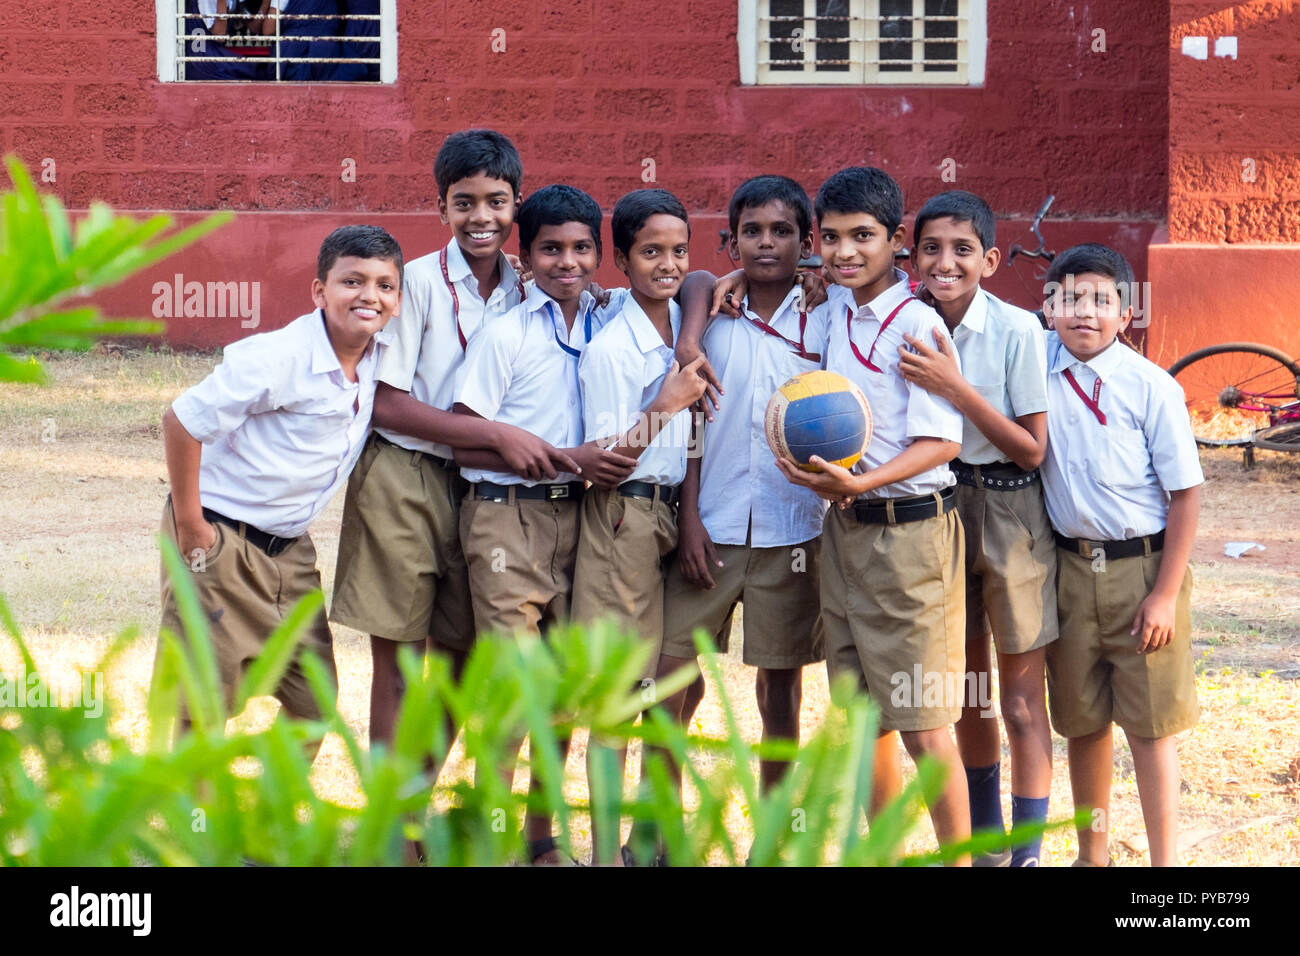 Grupo de la Escuela India de niños en uniforme escolar Foto de stock